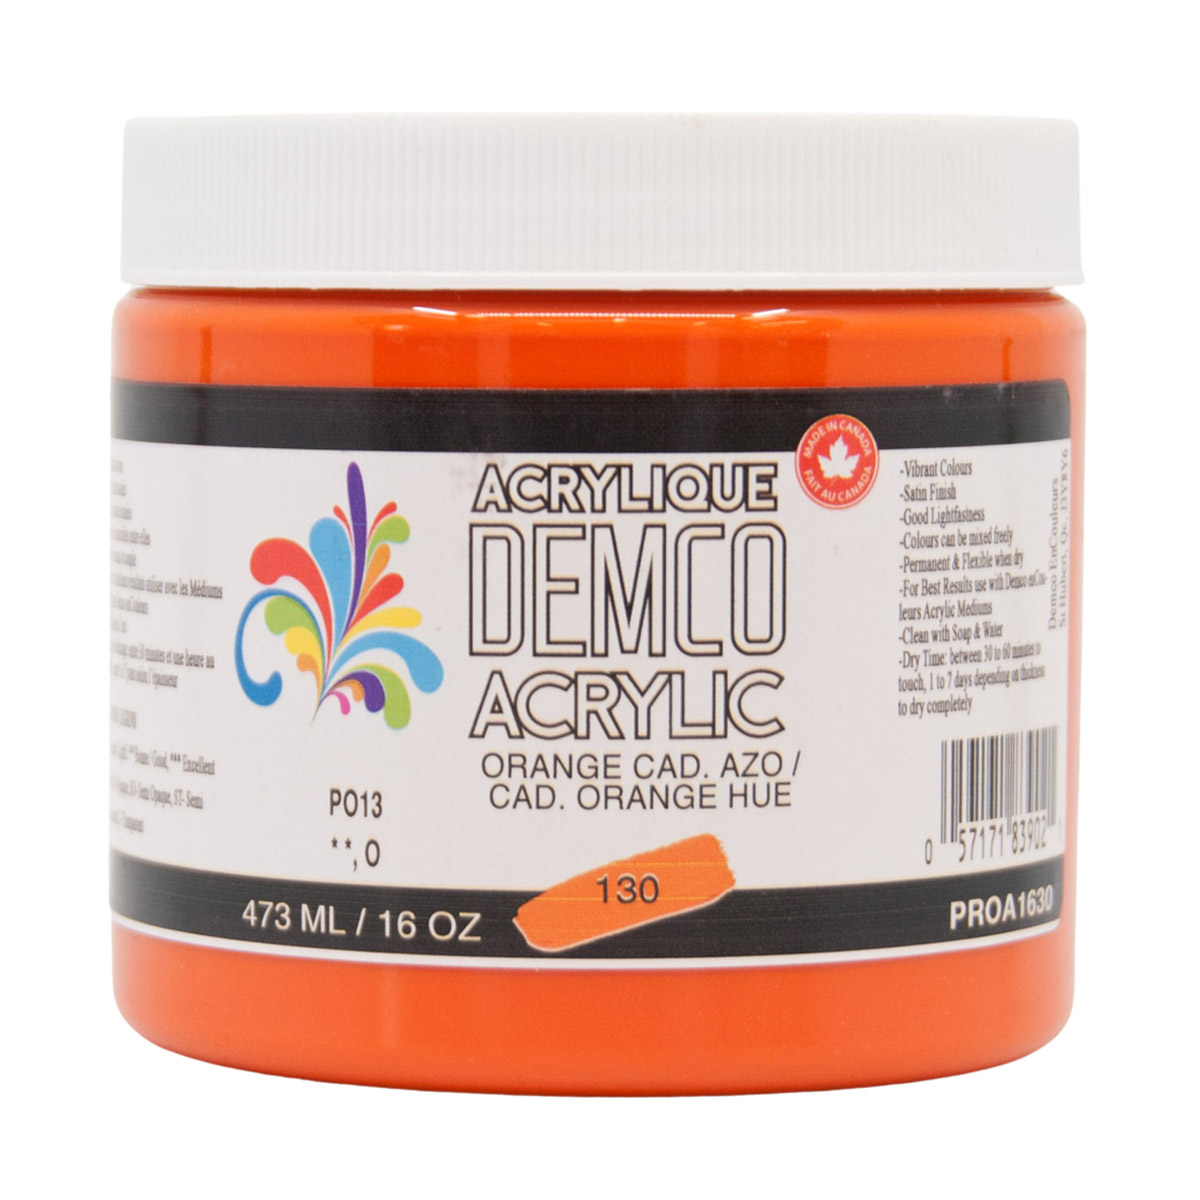 Demco Acrylic Cadmium Orange Hue 473ml/16oz